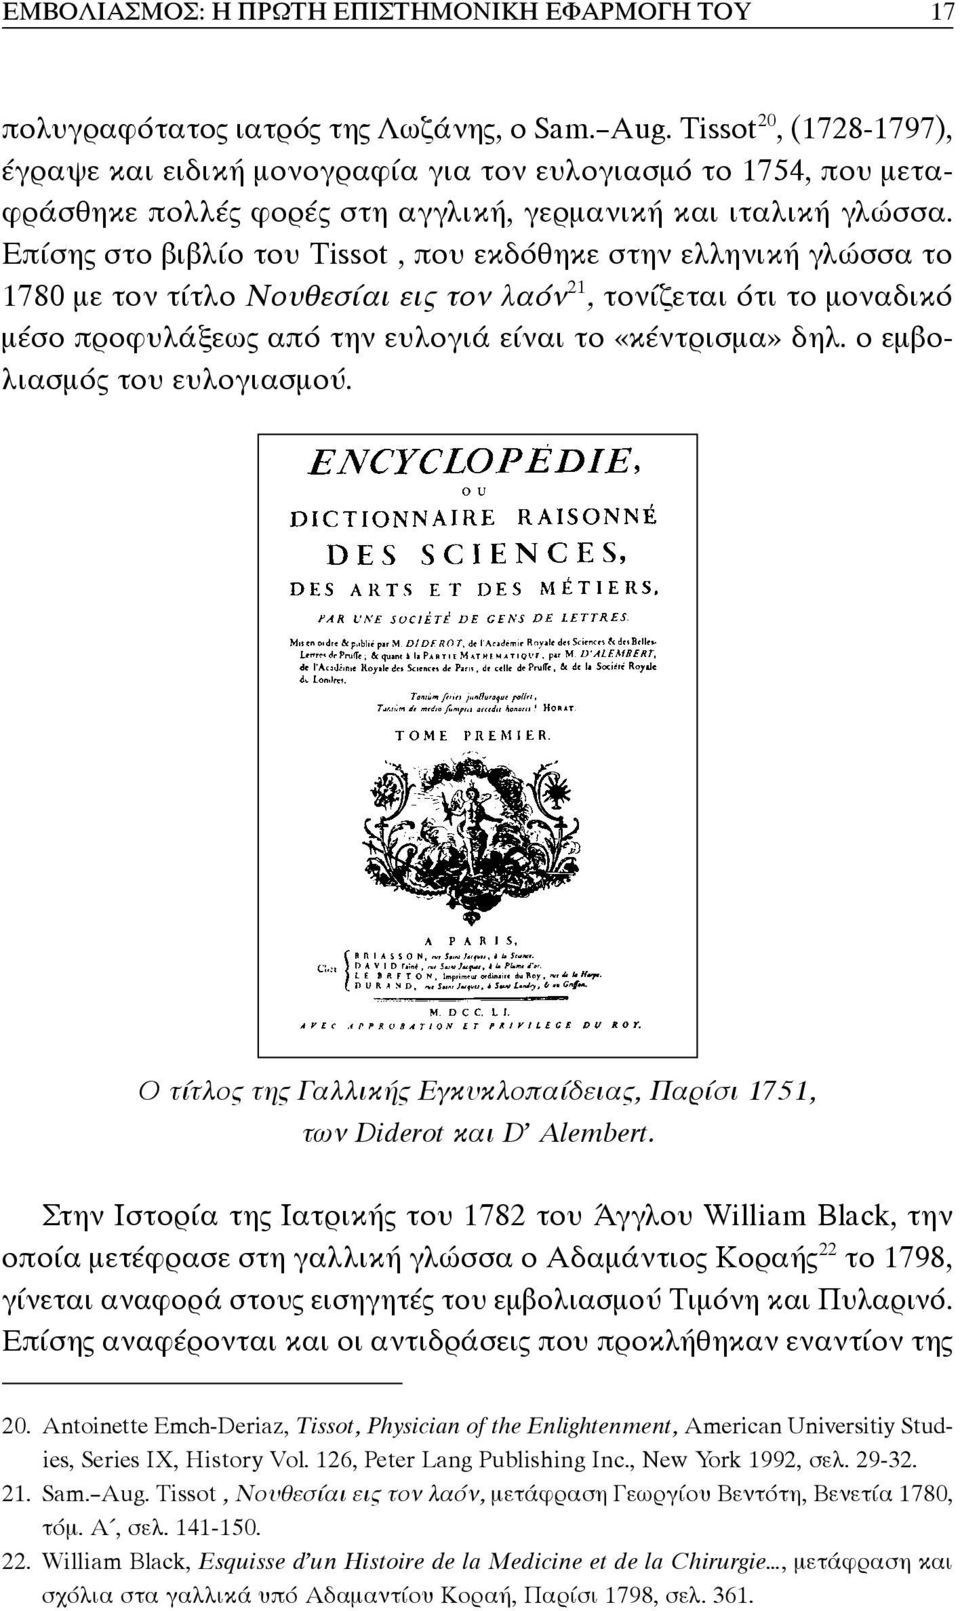 Επίσης στο βιβλίο του Tissot, που εκδόθηκε στην ελληνική γλώσσα το 1780 με τον τίτλο Νουθεσίαι εις τον λαόν 21, τονίζεται ότι το μοναδικό μέσο προφυλάξεως από την ευλογιά είναι το «κέντρισμα» δηλ.